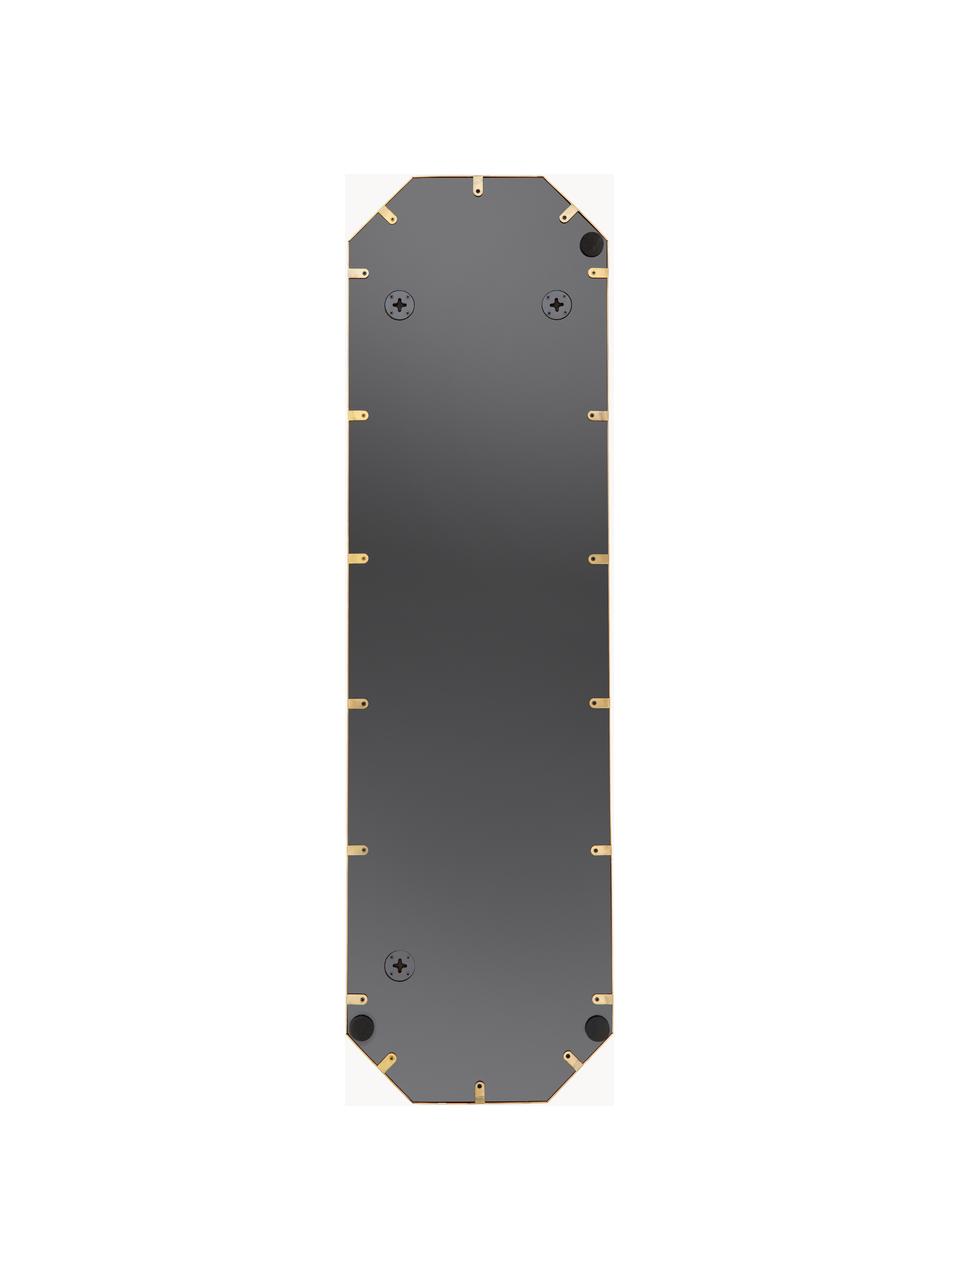 Espejo de pared octogonal Isabella, Espejo: cristal, Parte trasera: tablero de fibras de dens, Dorado, An 40 x Al 140 cm